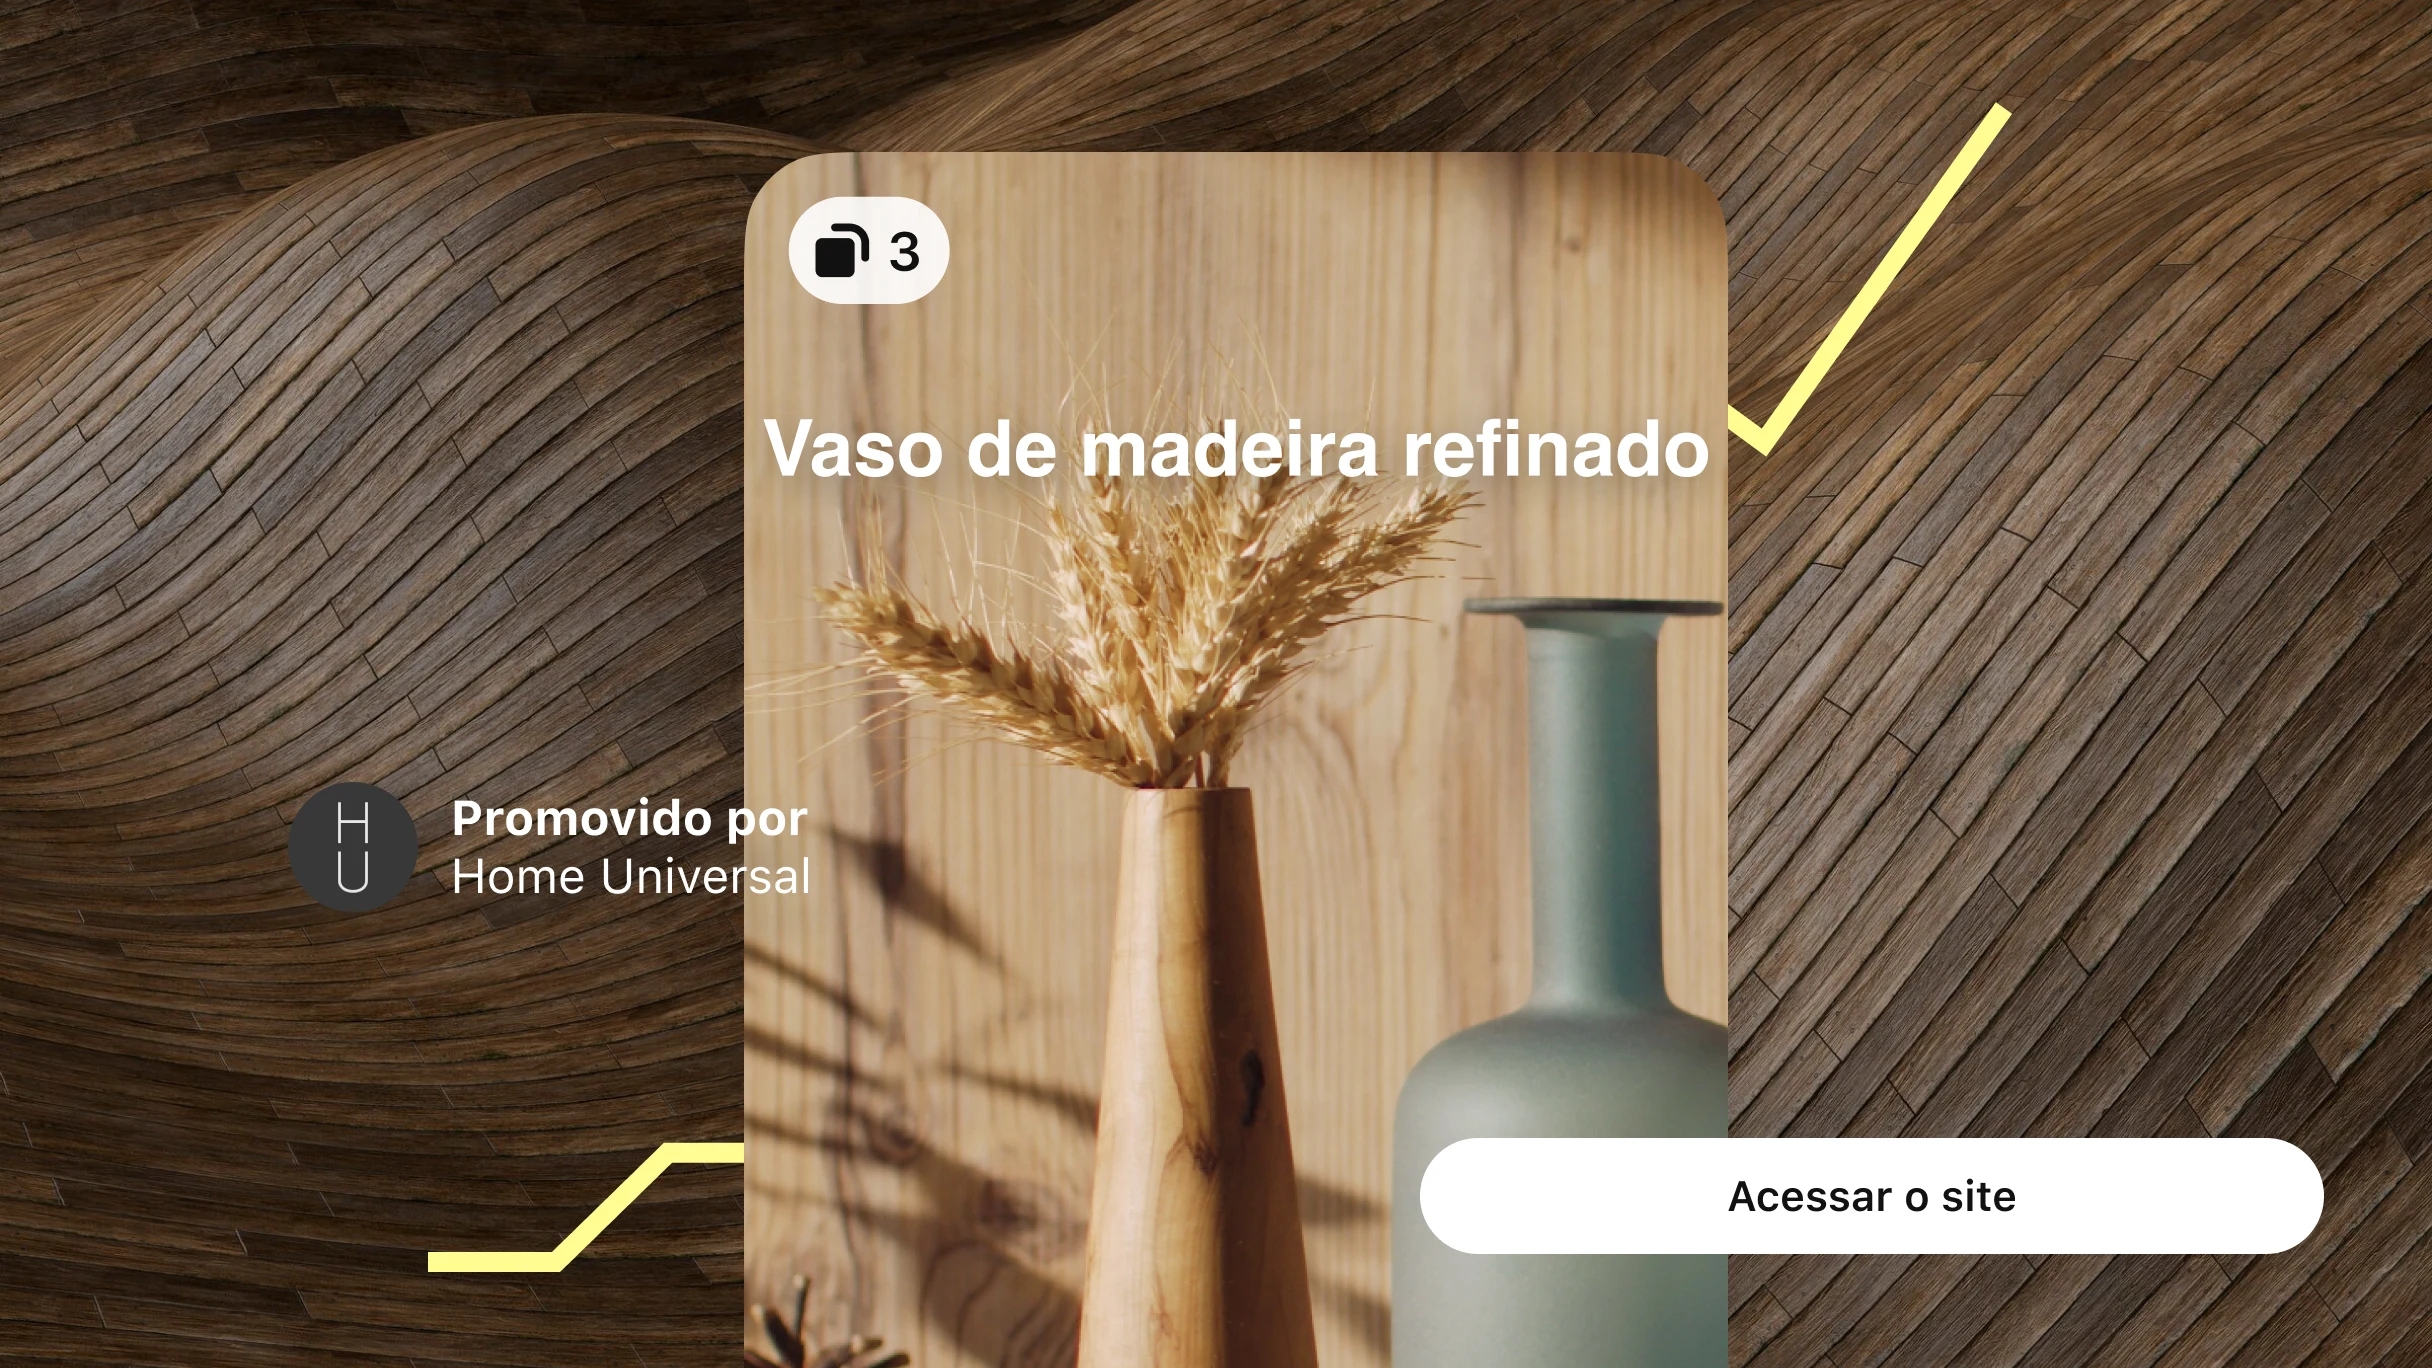 Idea Ad mostrando dois vasos com a descrição "Vaso de madeira refinado" em um fundo de madeira curvado com uma linha de gráfico de tendência amarela ascendente e um botão alinhado à direita com o texto "Acessar o site".